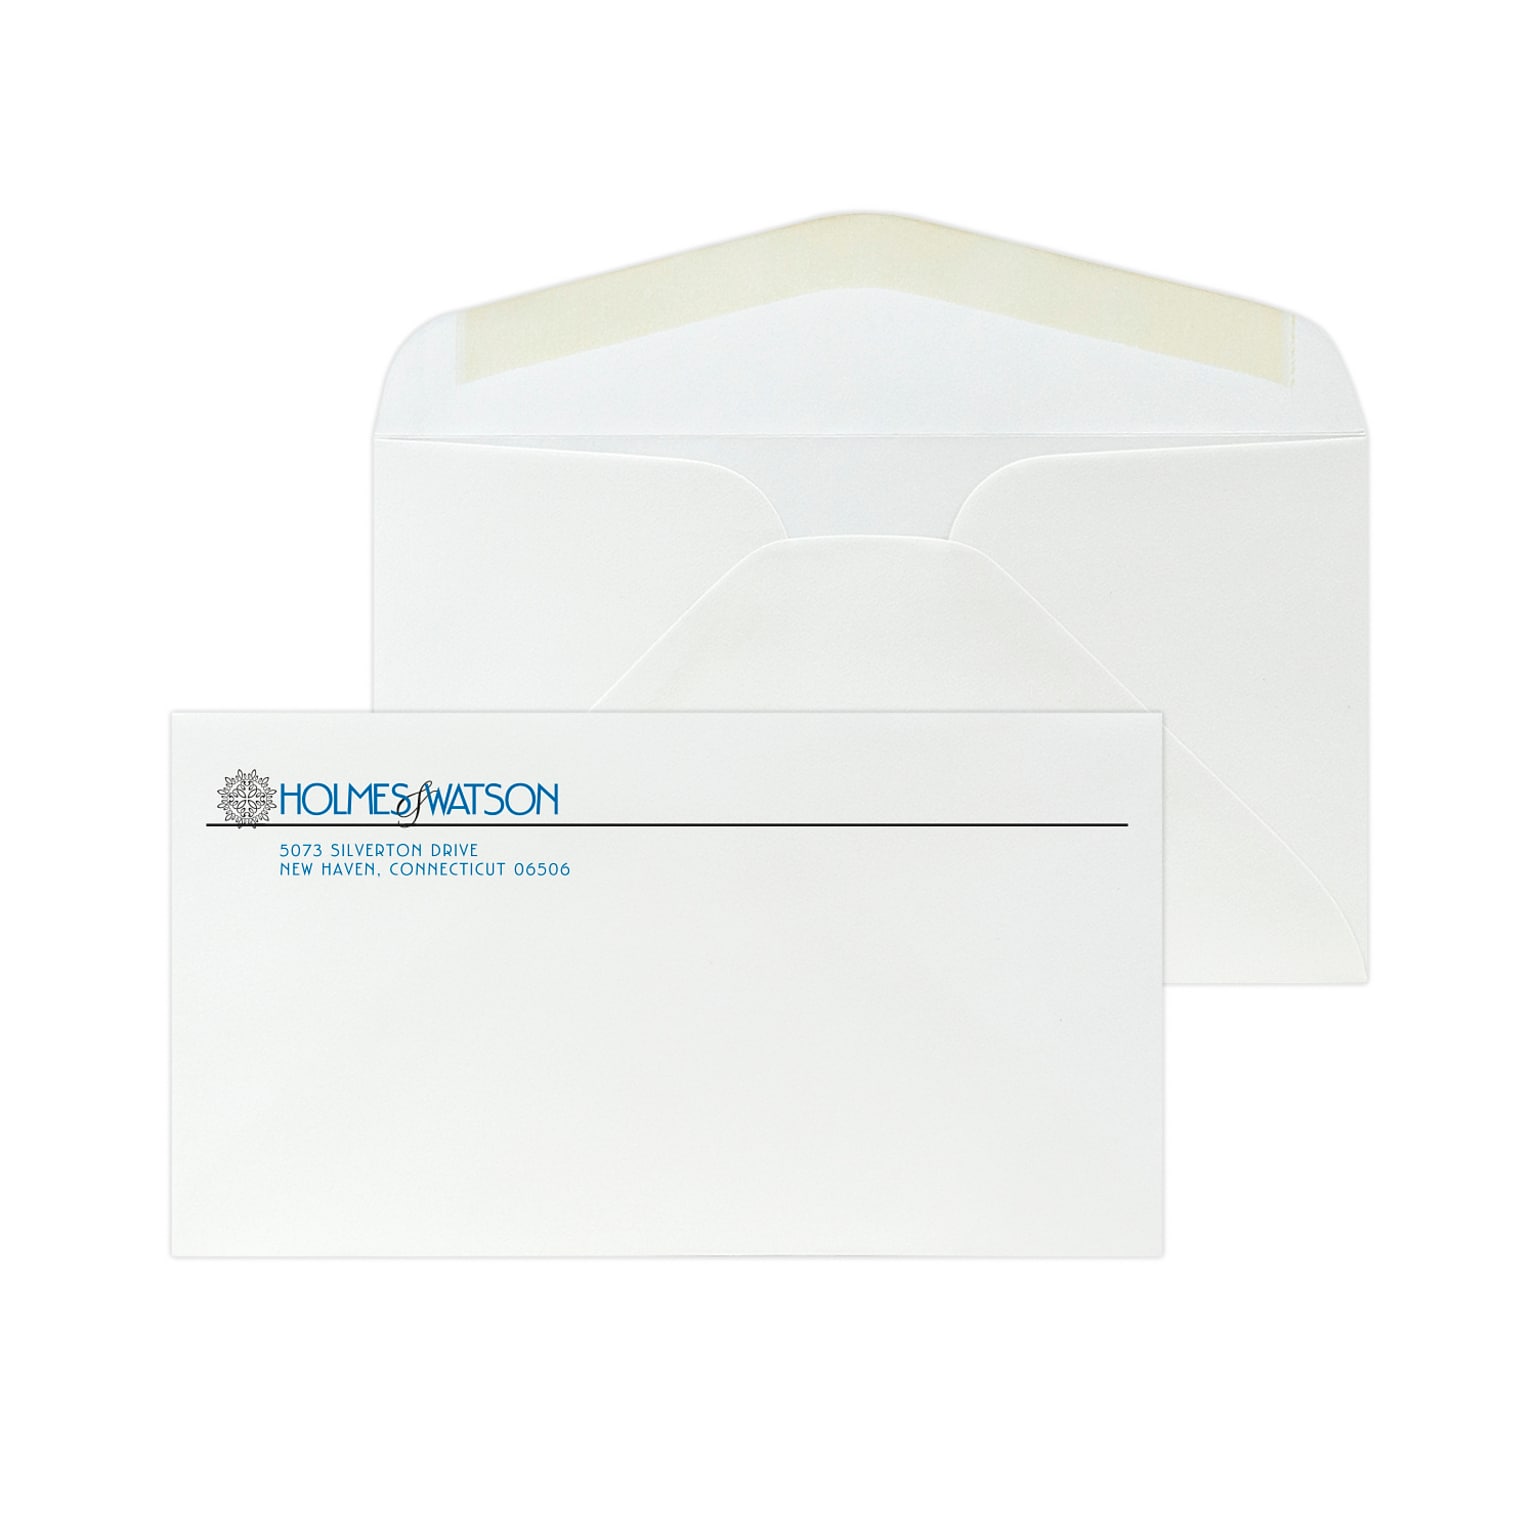 Custom #6-3/4 Standard Envelopes, 3 5/8 x 6 1/2, 24# White 25% Cotton Bond, 2 Standard Inks, 250 / Pack